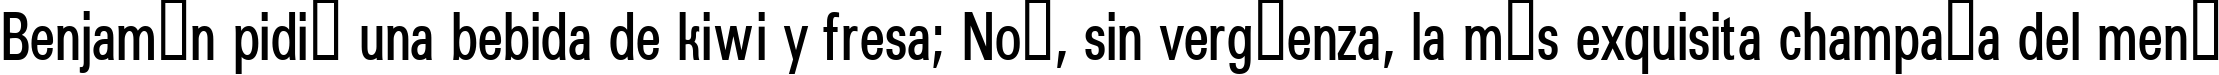 Пример написания шрифтом a_GroticCnDemi текста на испанском